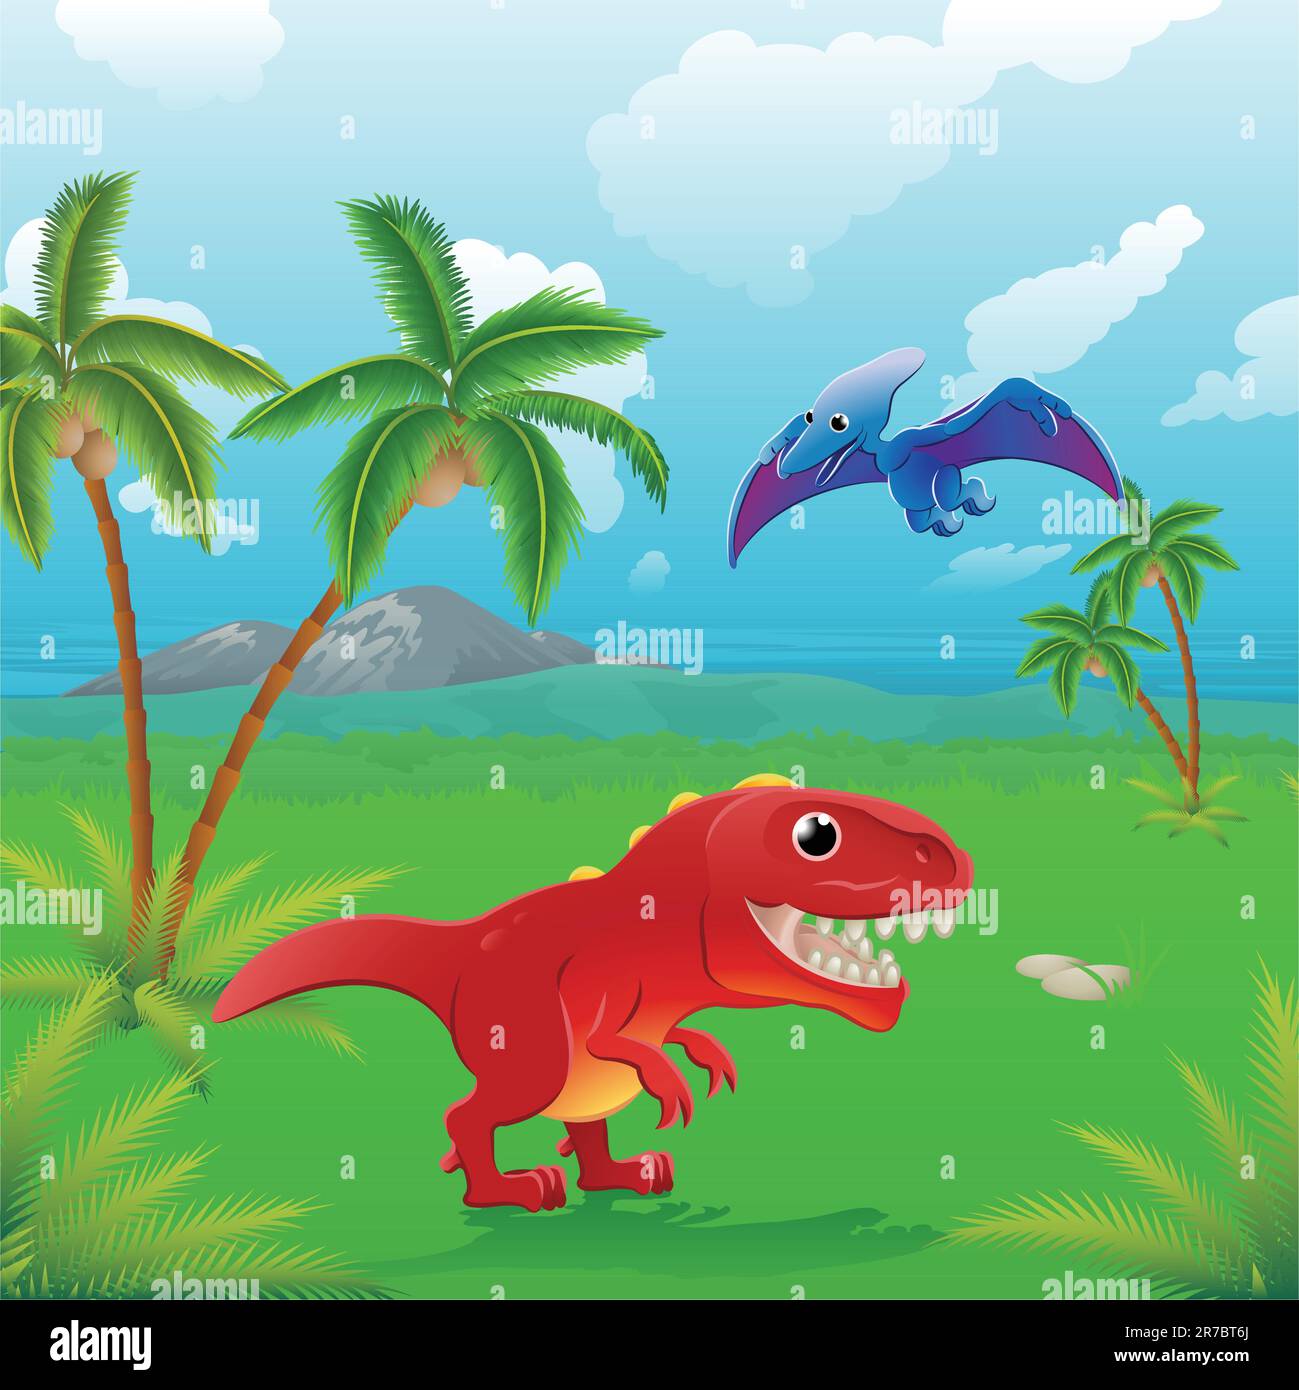 Dinosaures mignons dans la scène préhistorique. Série de trois illustrations pouvant être utilisées séparément ou côte à côte pour former un paysage panoramique. Illustration de Vecteur